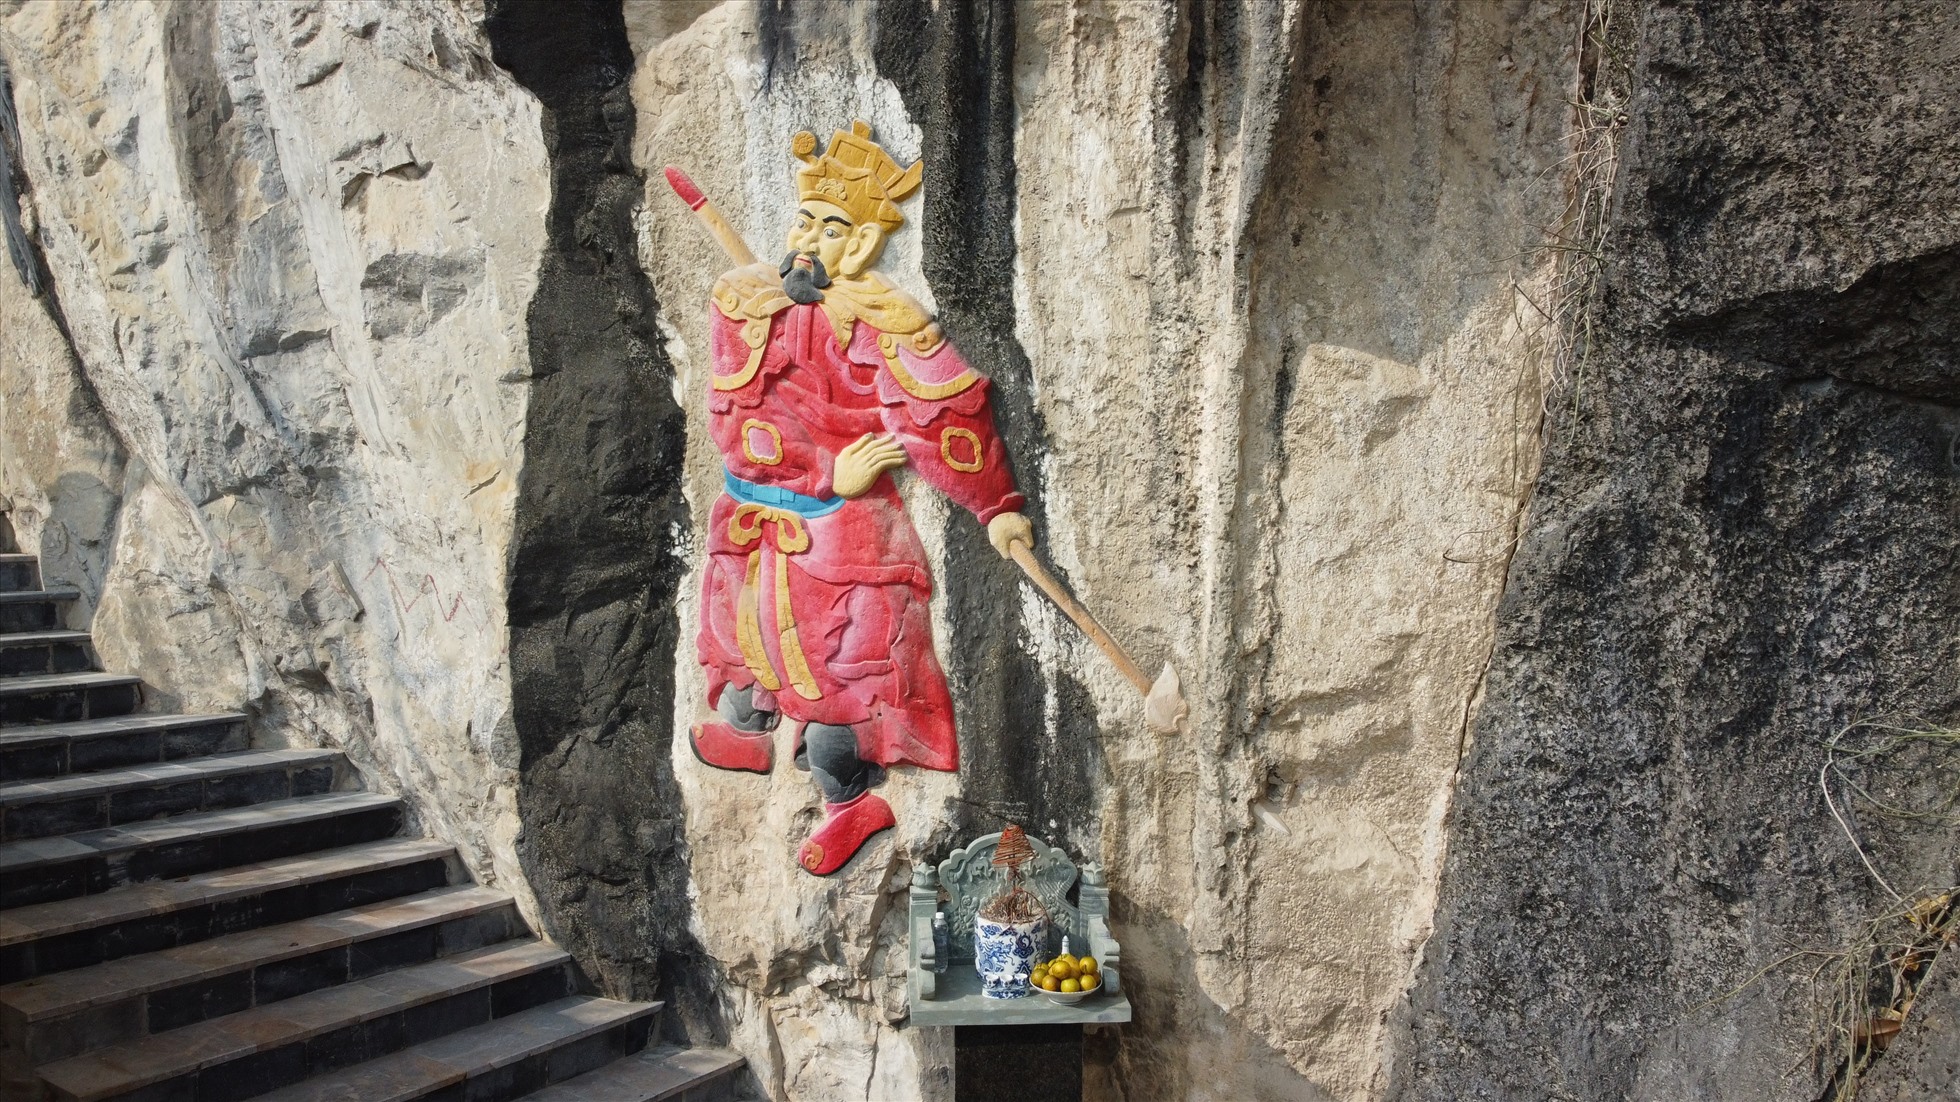 Hình tượng người trên vách đá được dùng sơn đỏ, vàng để tô lên. Ảnh: Q.D